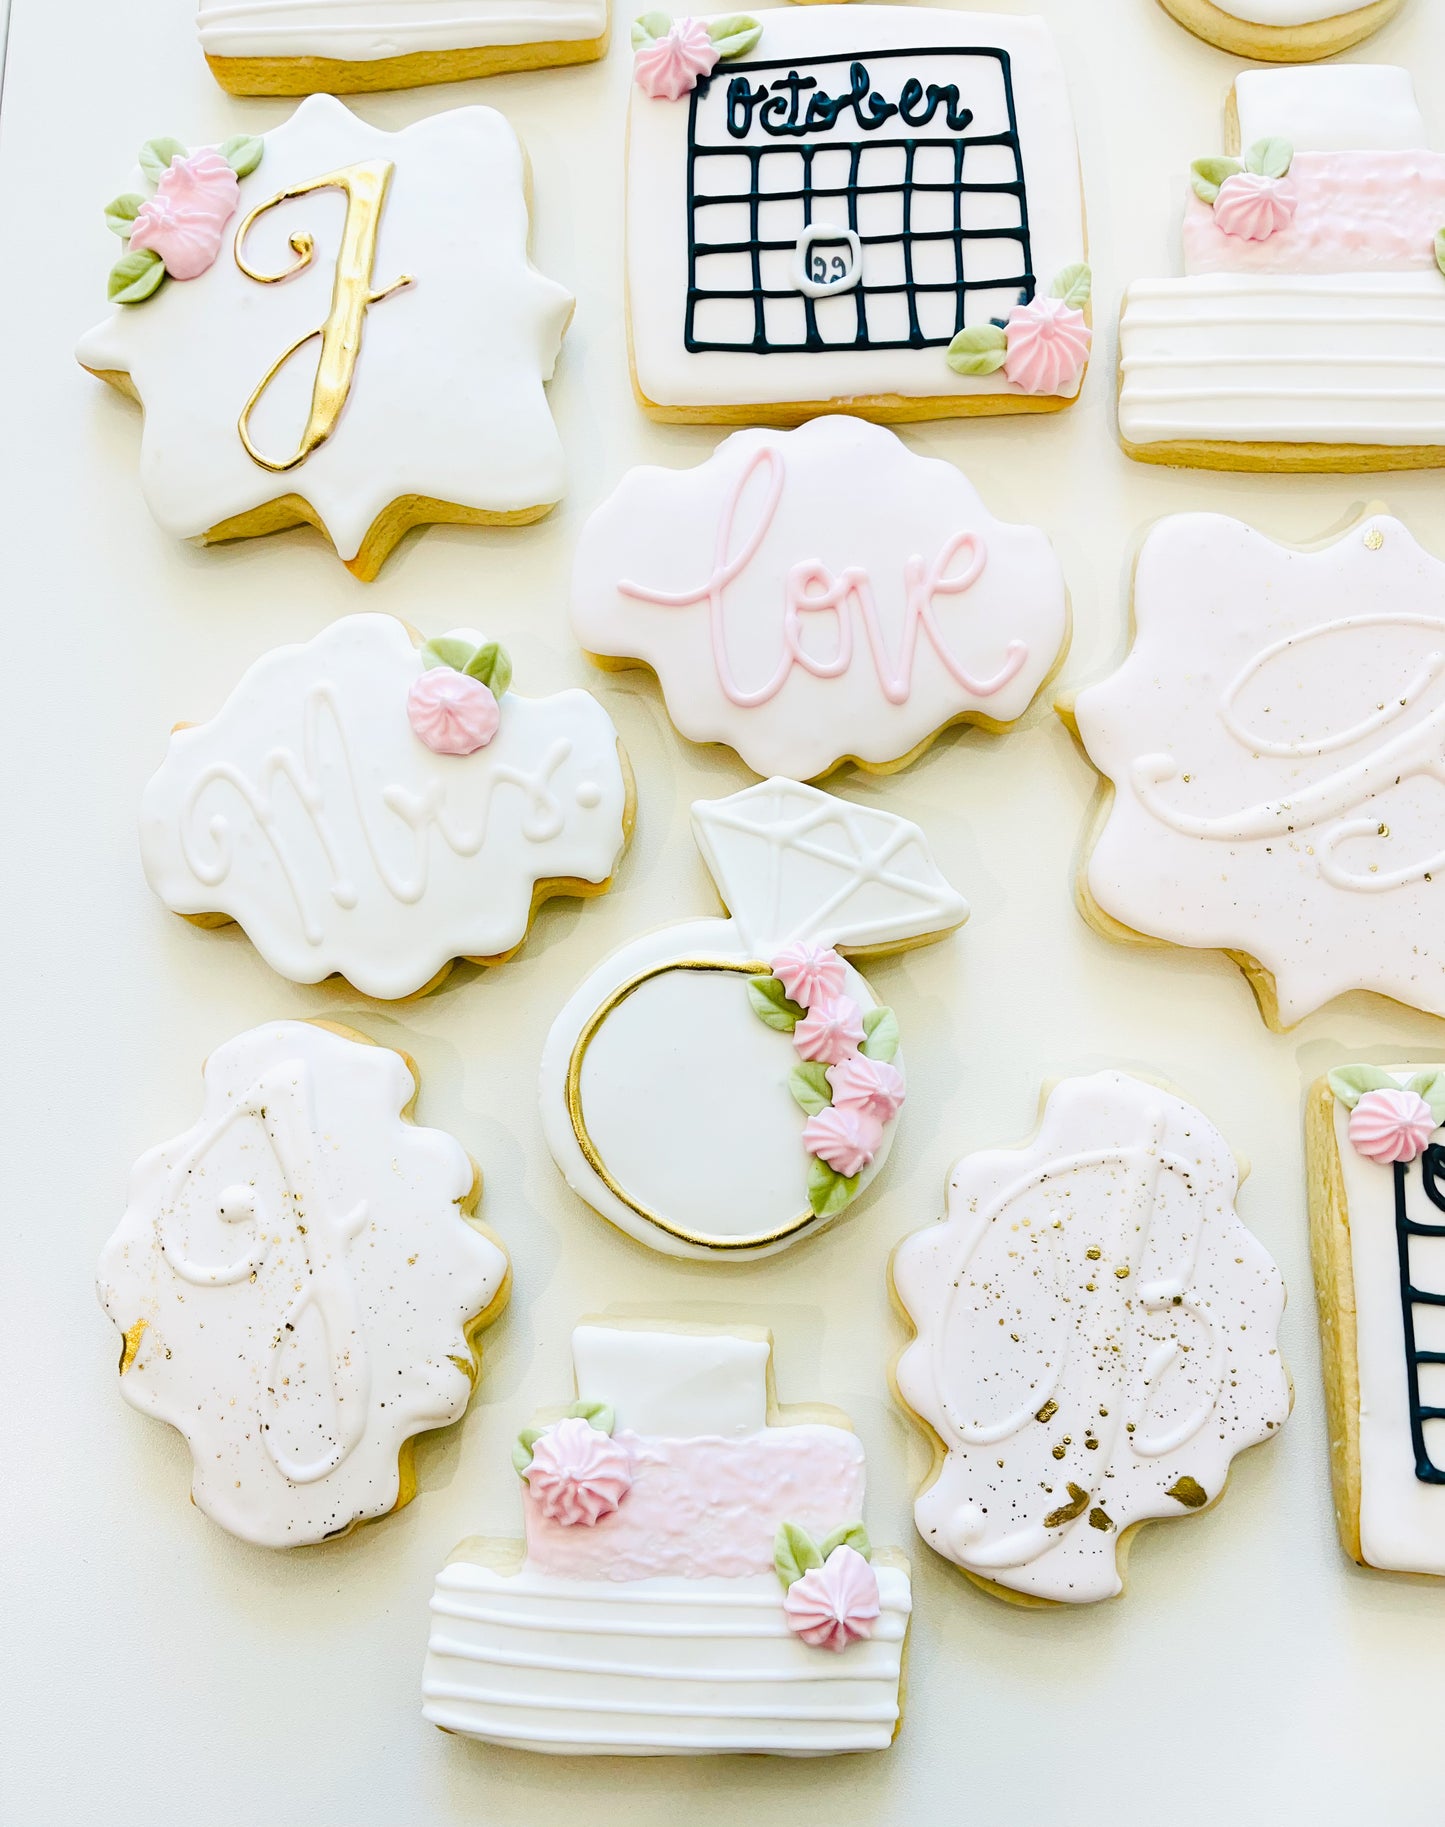 wedding cake, wedding sugar cookies, bride to be cookies, calendar cookies